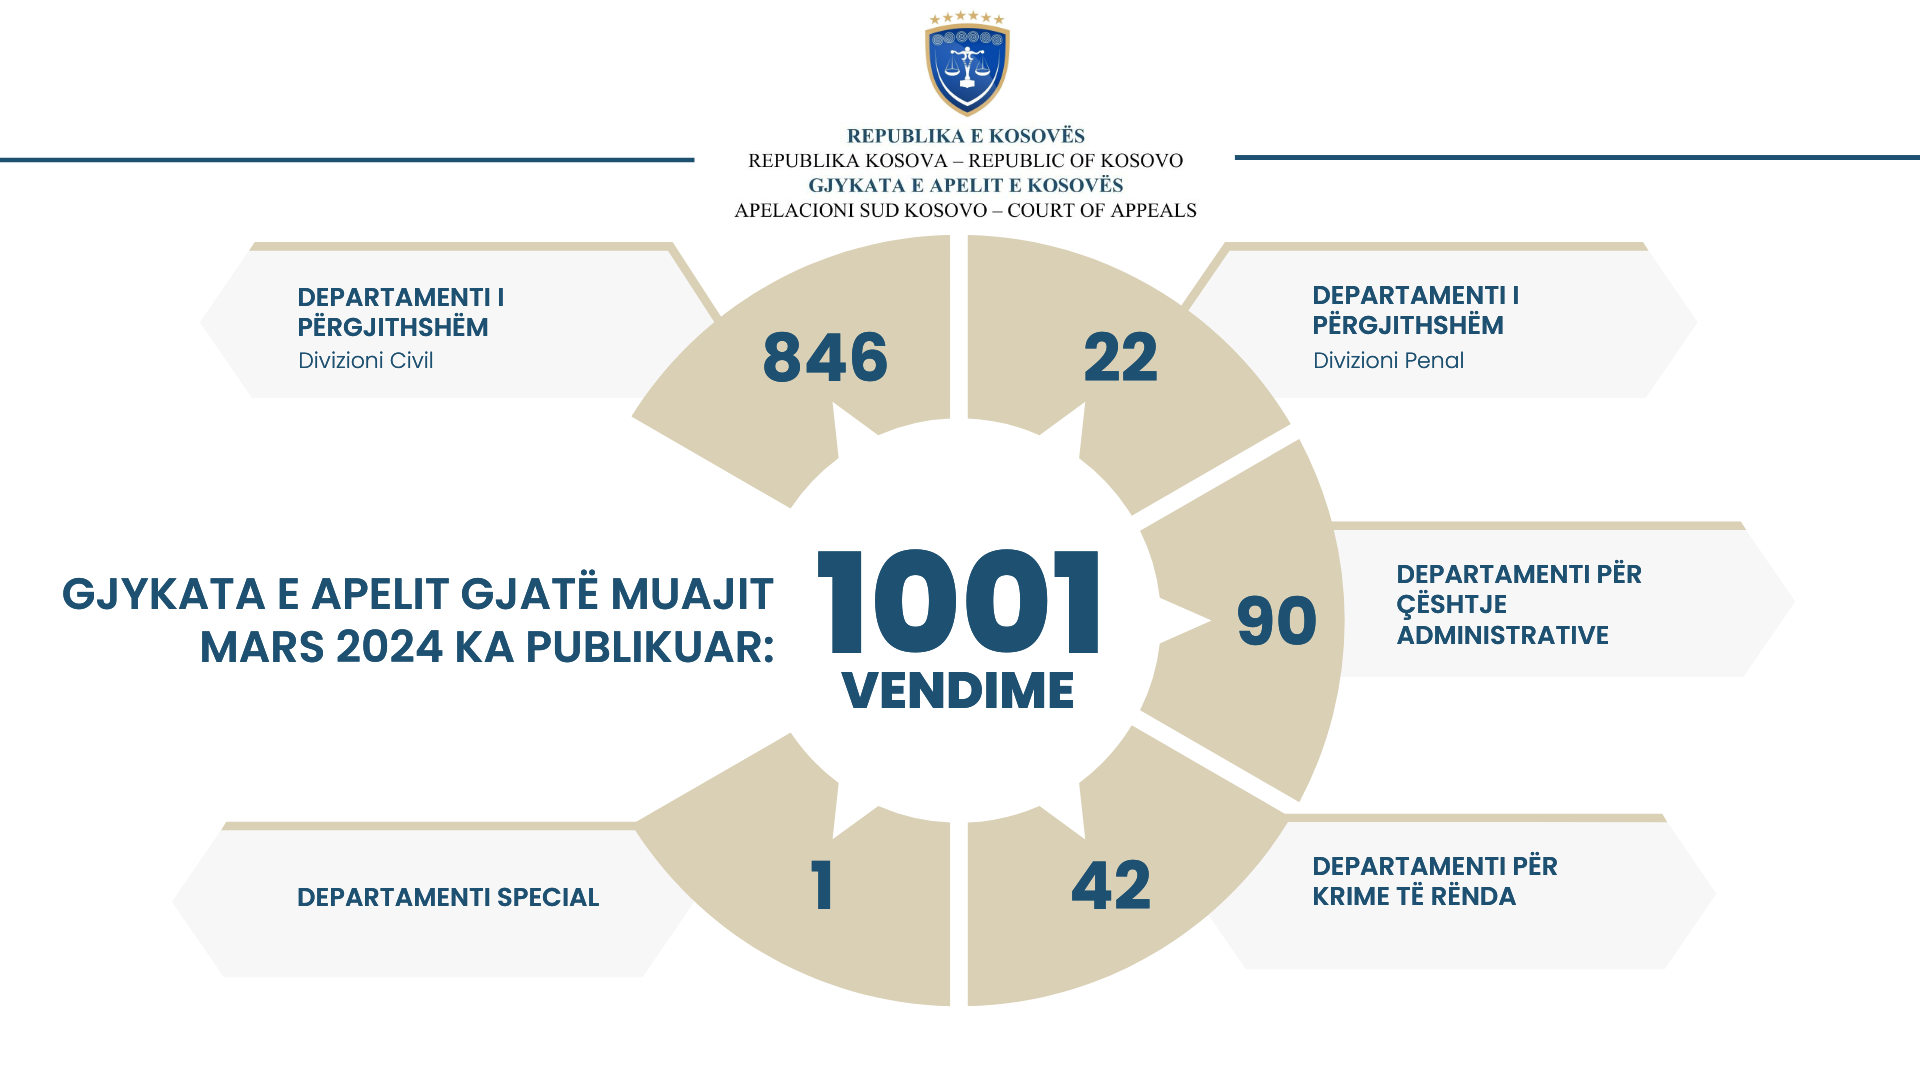 Gjykata e Apelit e Kosovës gjatë muajit Mars ka publikuar 1001 vendime